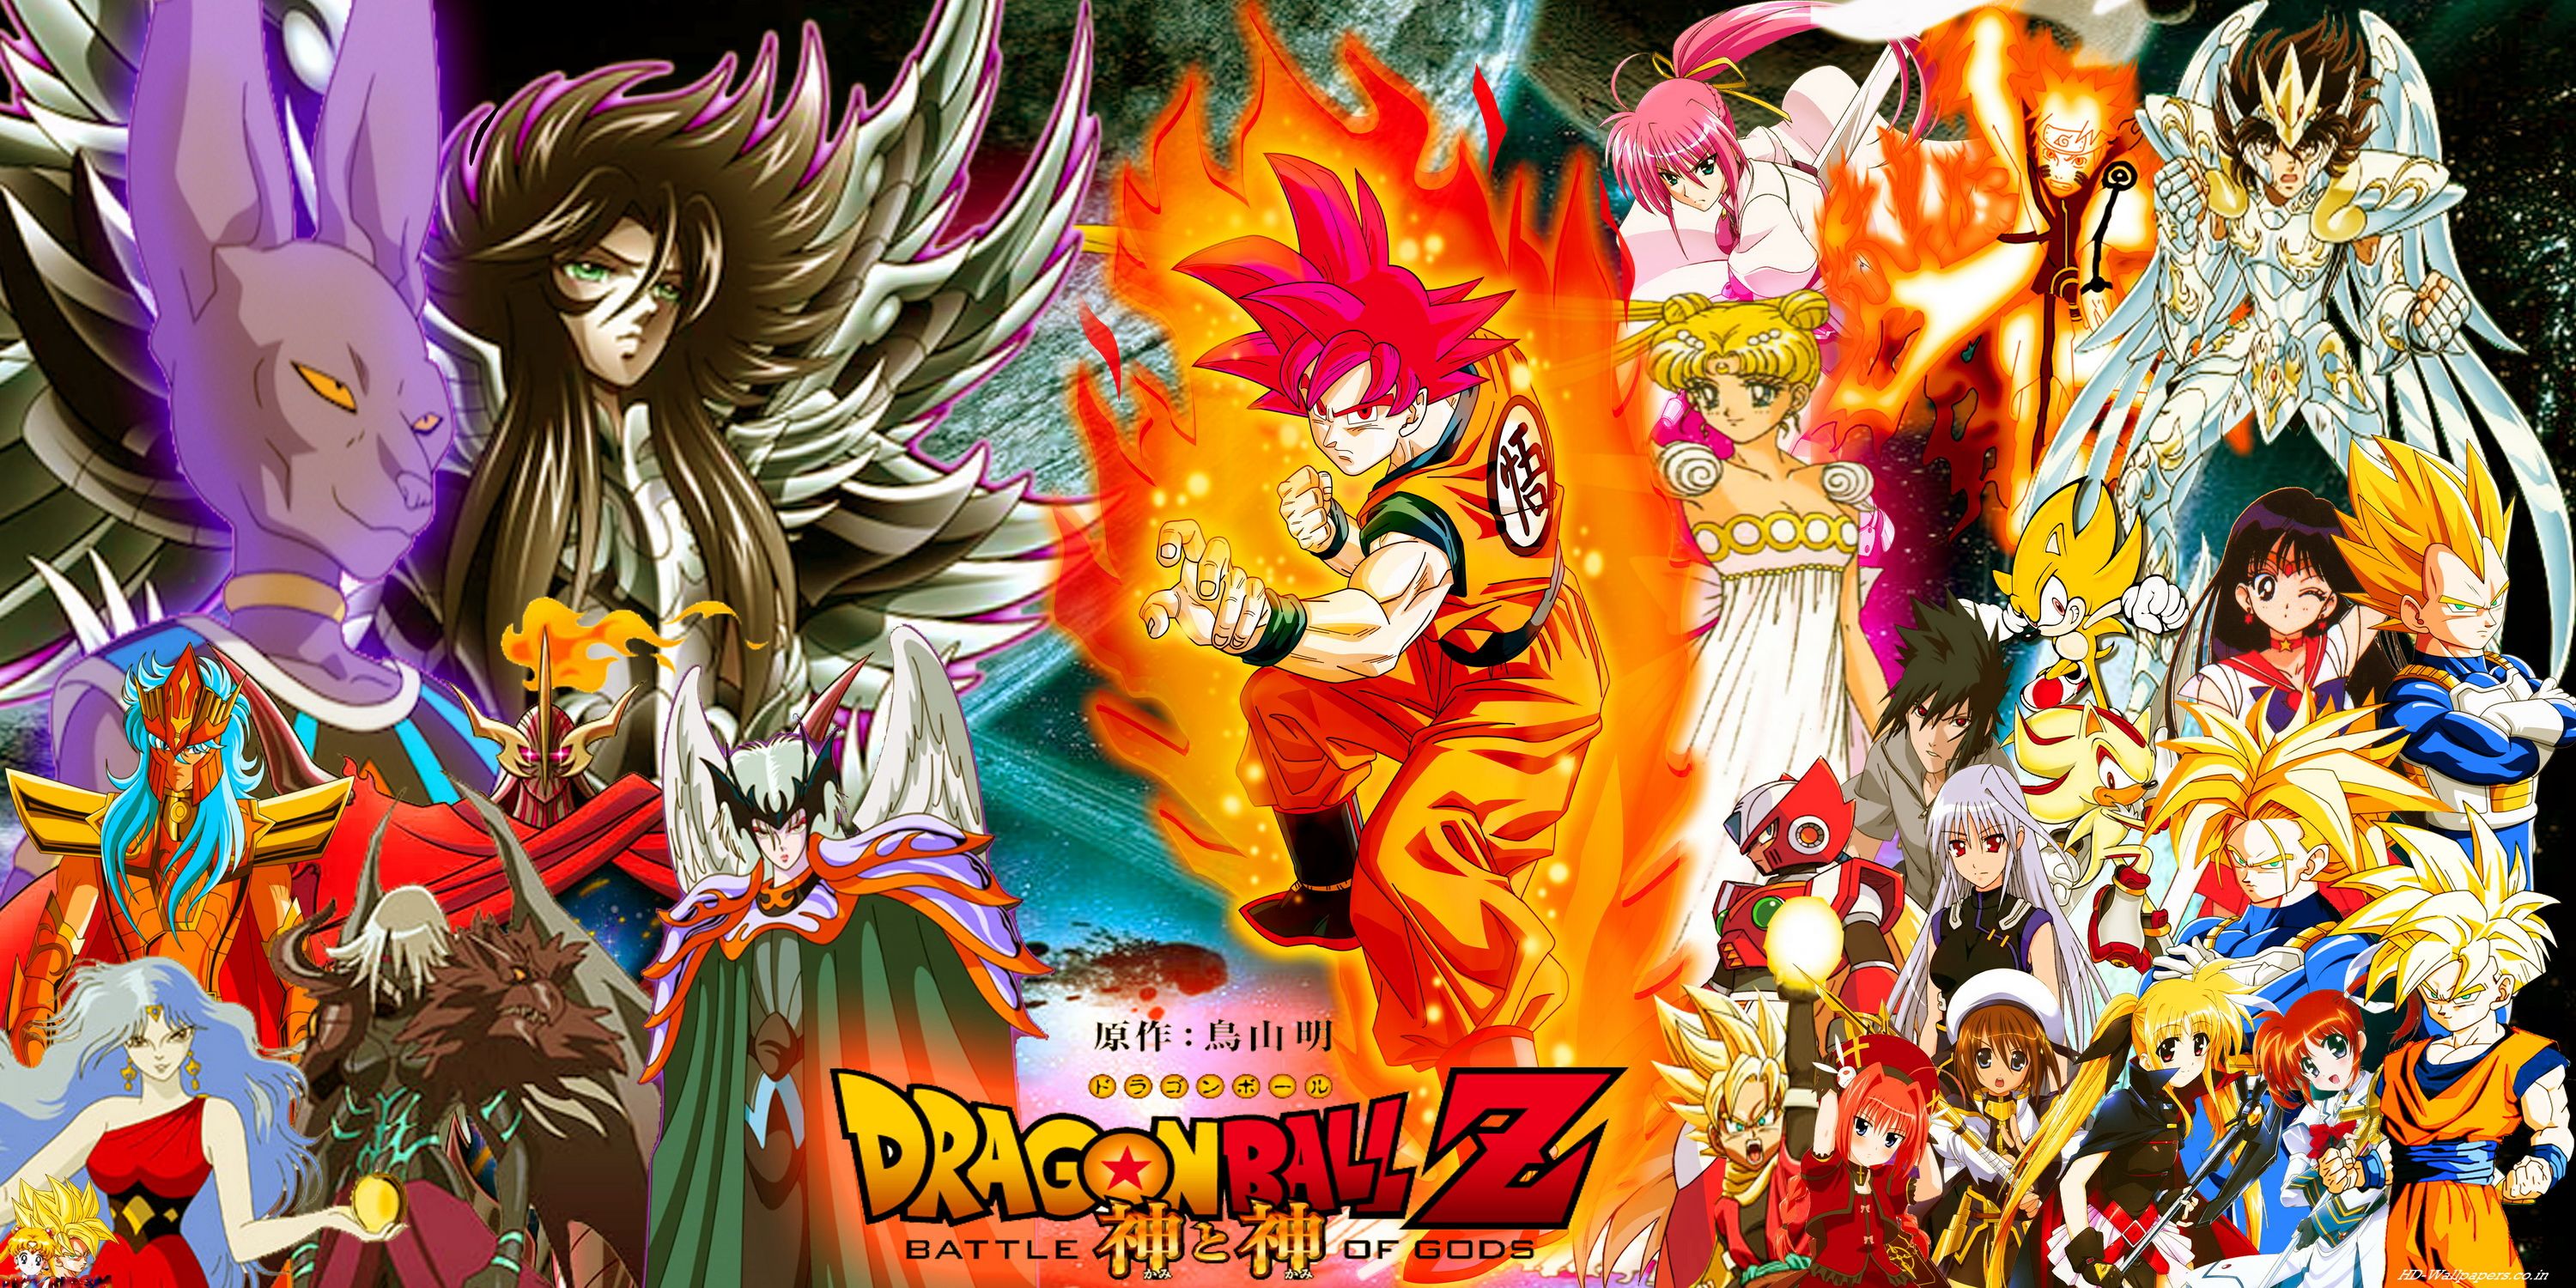 Dragon Ball Z fondos de pantalla, fotos, imágenes